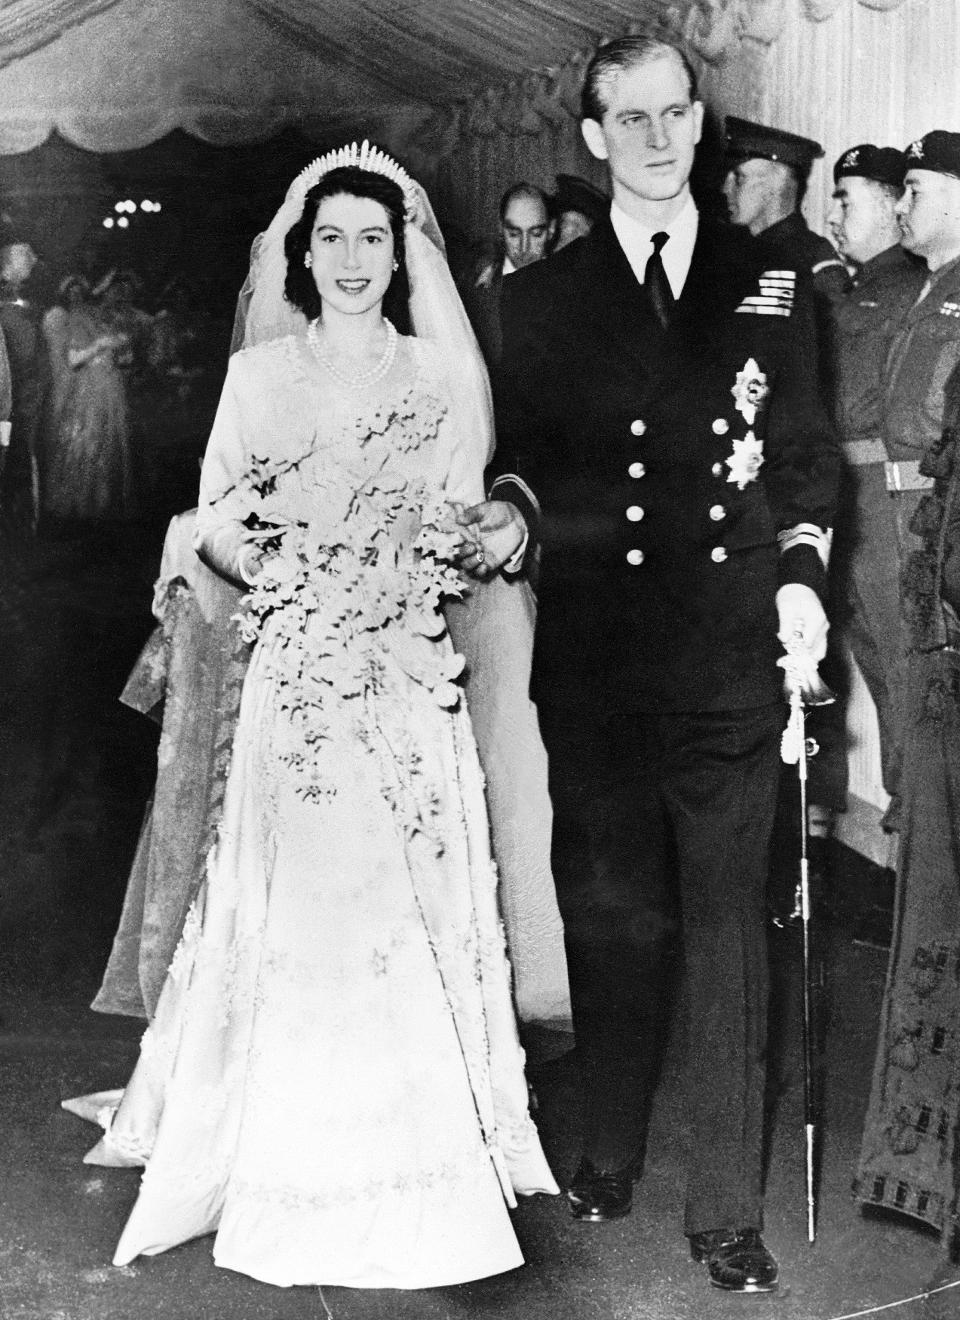 شاهد صور نادرة من زفاف الملكة إليزابيث والأمير فيليب فى ذكرى زواجهما الـ72 اليوم السابع